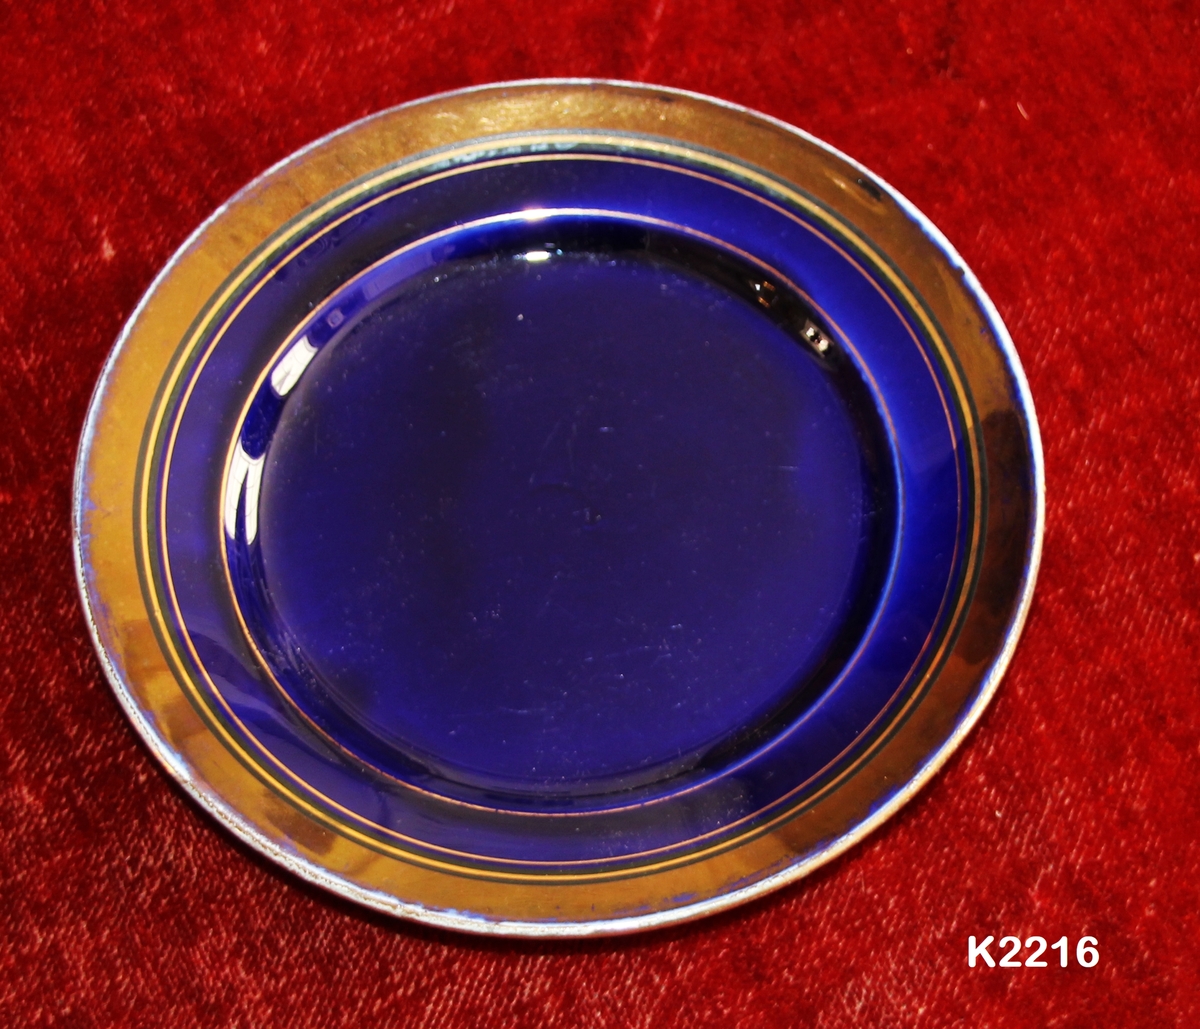 Skål, 1890-1910.
Sentøy, dyp blå (blåfiolett) med kobberlustre-kant. 
Skrå brem med kobberlustrekant øverst. Speil og nedre del av brem er blå.